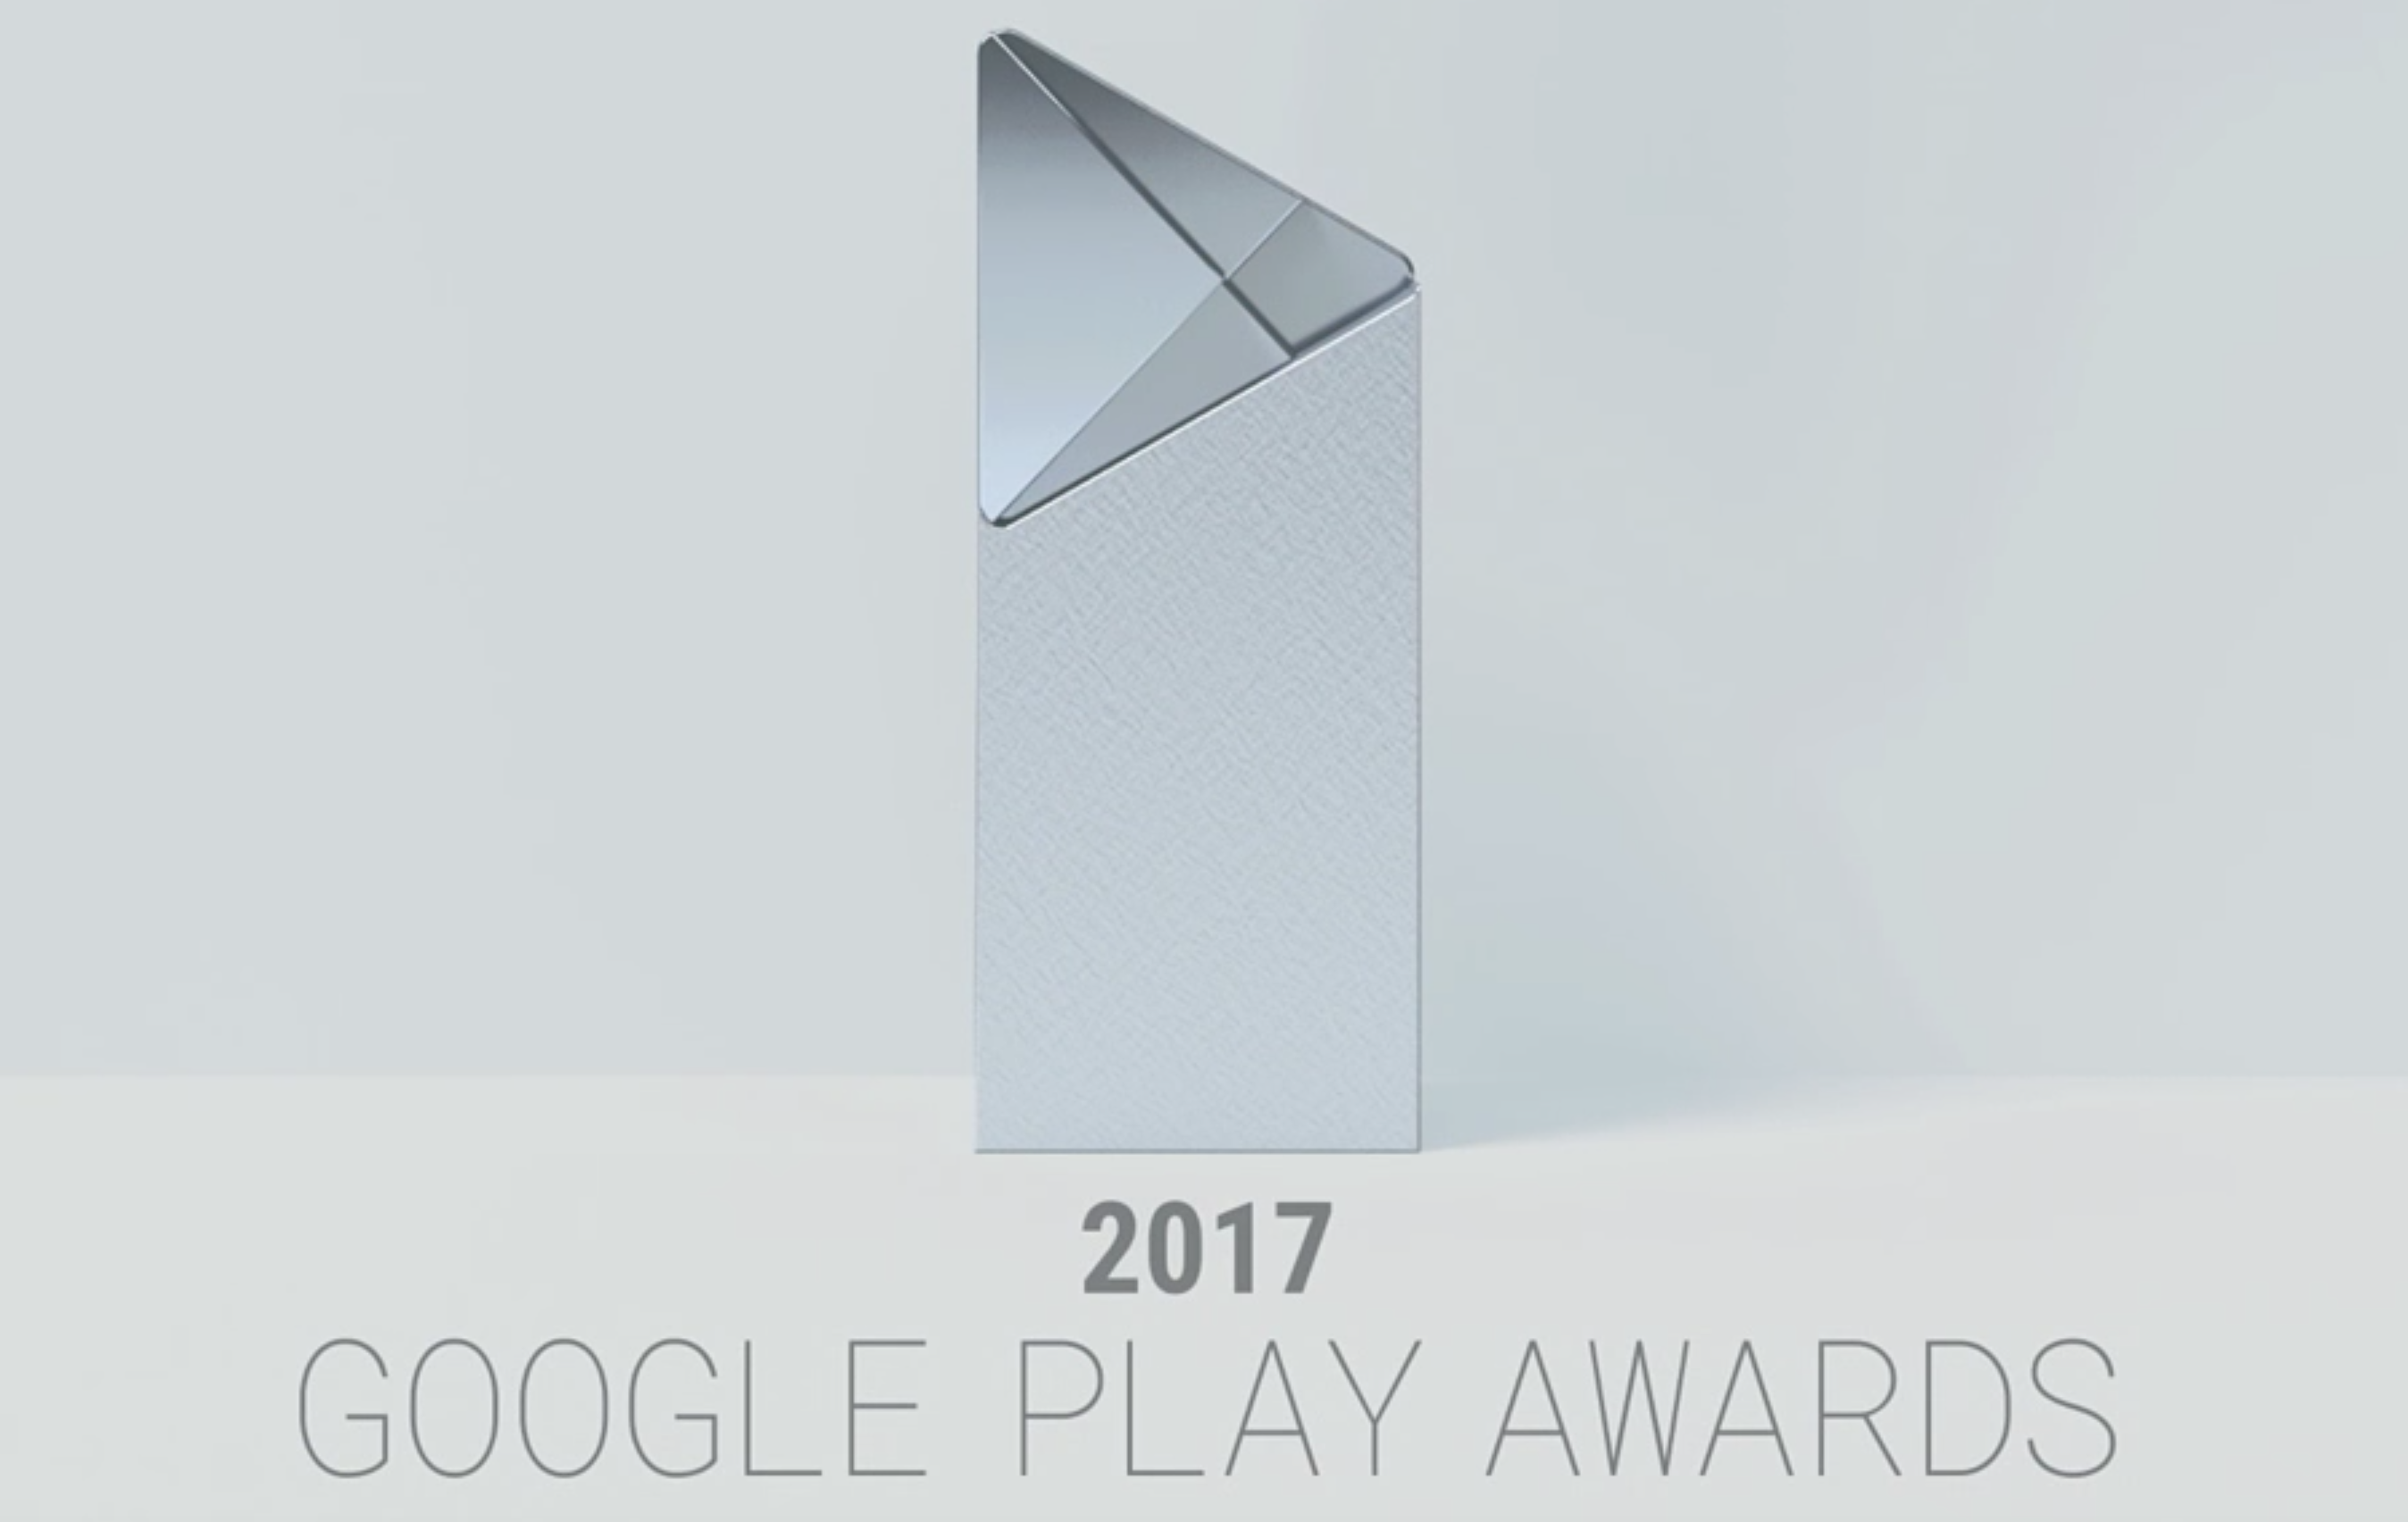 The Google Play Awards 2017 logo.